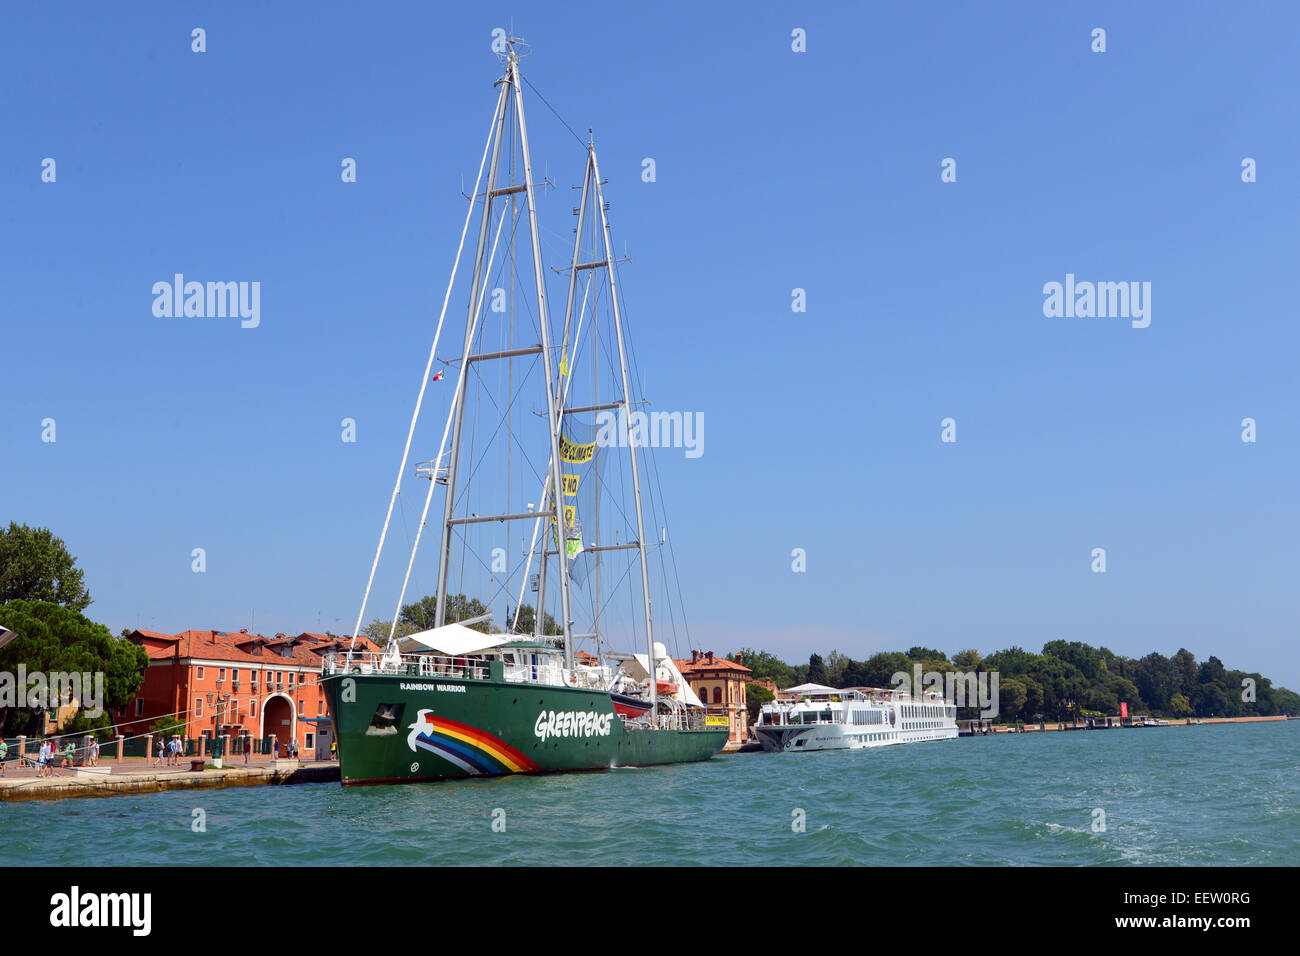 Greenpeace Rainbow Warrior ship docked in Venice. Stock Photo